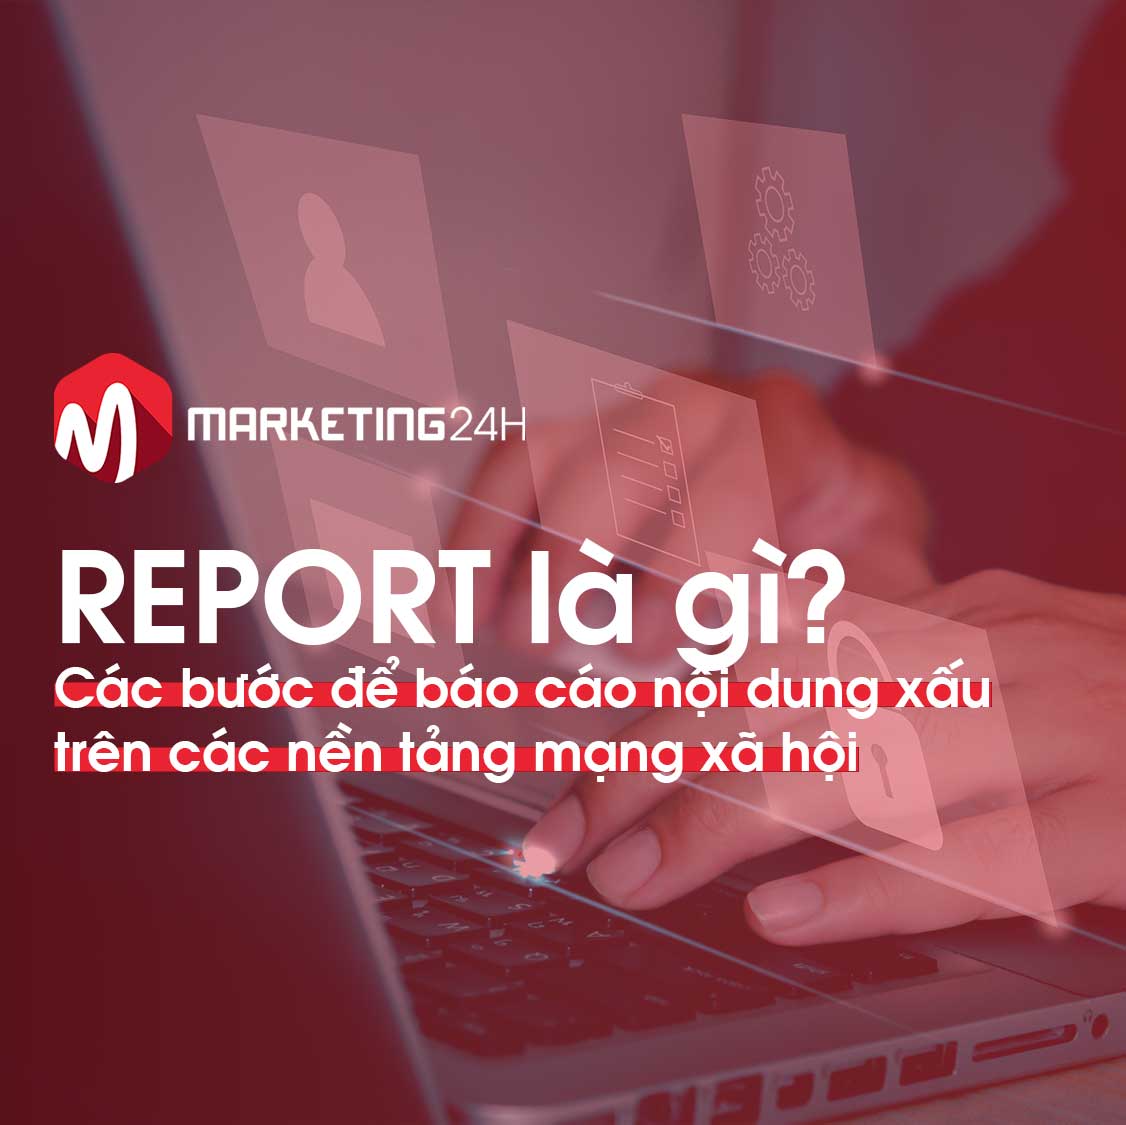 Report là gì? Các bước để báo cáo nội dung xấu trên các nền tảng mạng xã hội